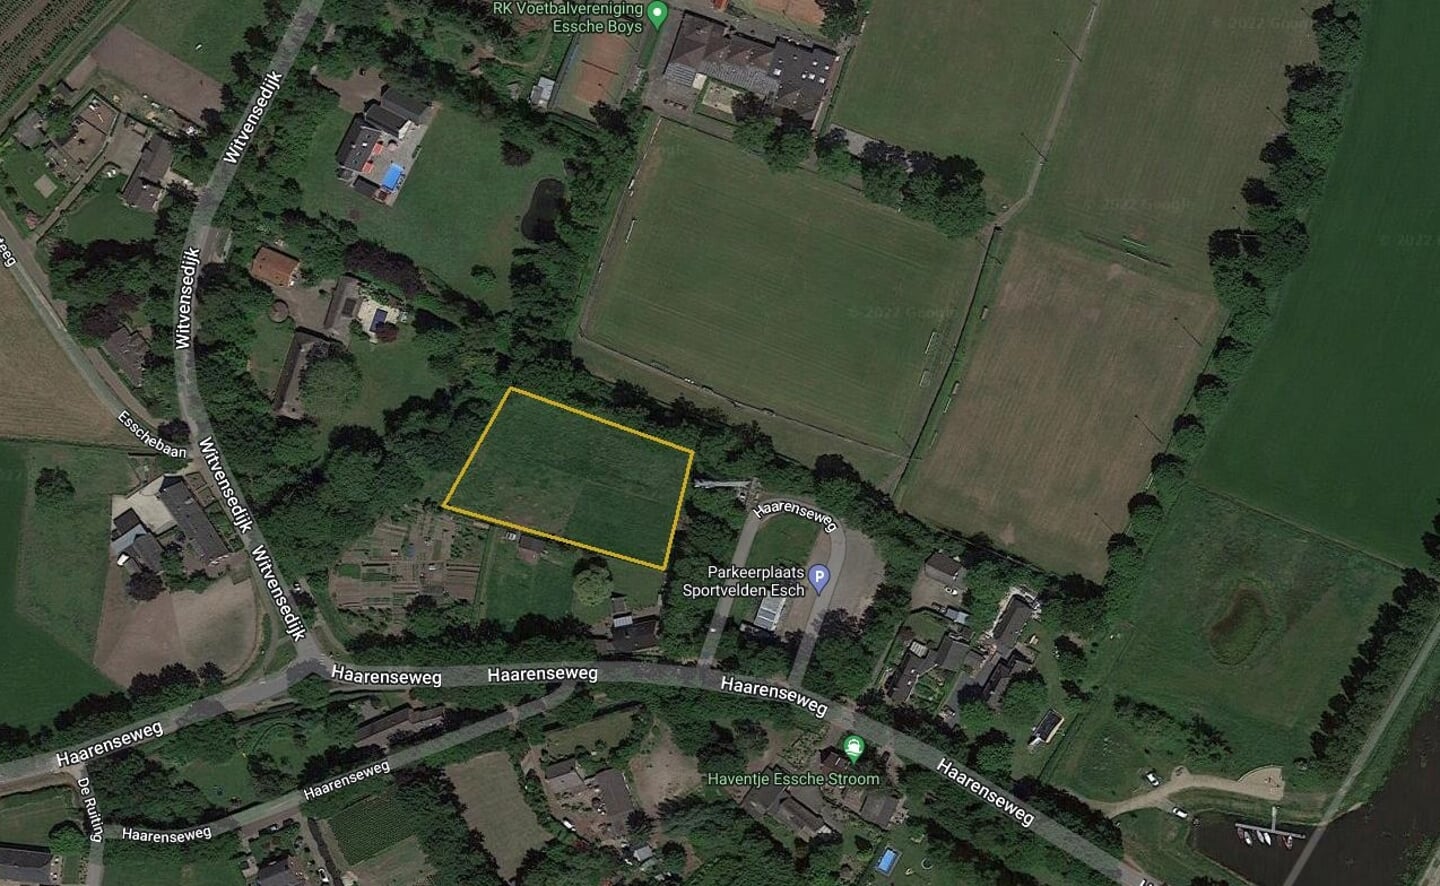 Het perceel aan de Haarenseweg dat de gemeente Boxtel graag wil verkopen is ongeveer een kwart voetbalveld groot. Veel woningen kunnen er niet op, maar inwoners van Esch zien genoeg andere mogelijkheden. Tiny Houses bijvoorbeeld, of een ecotuin.